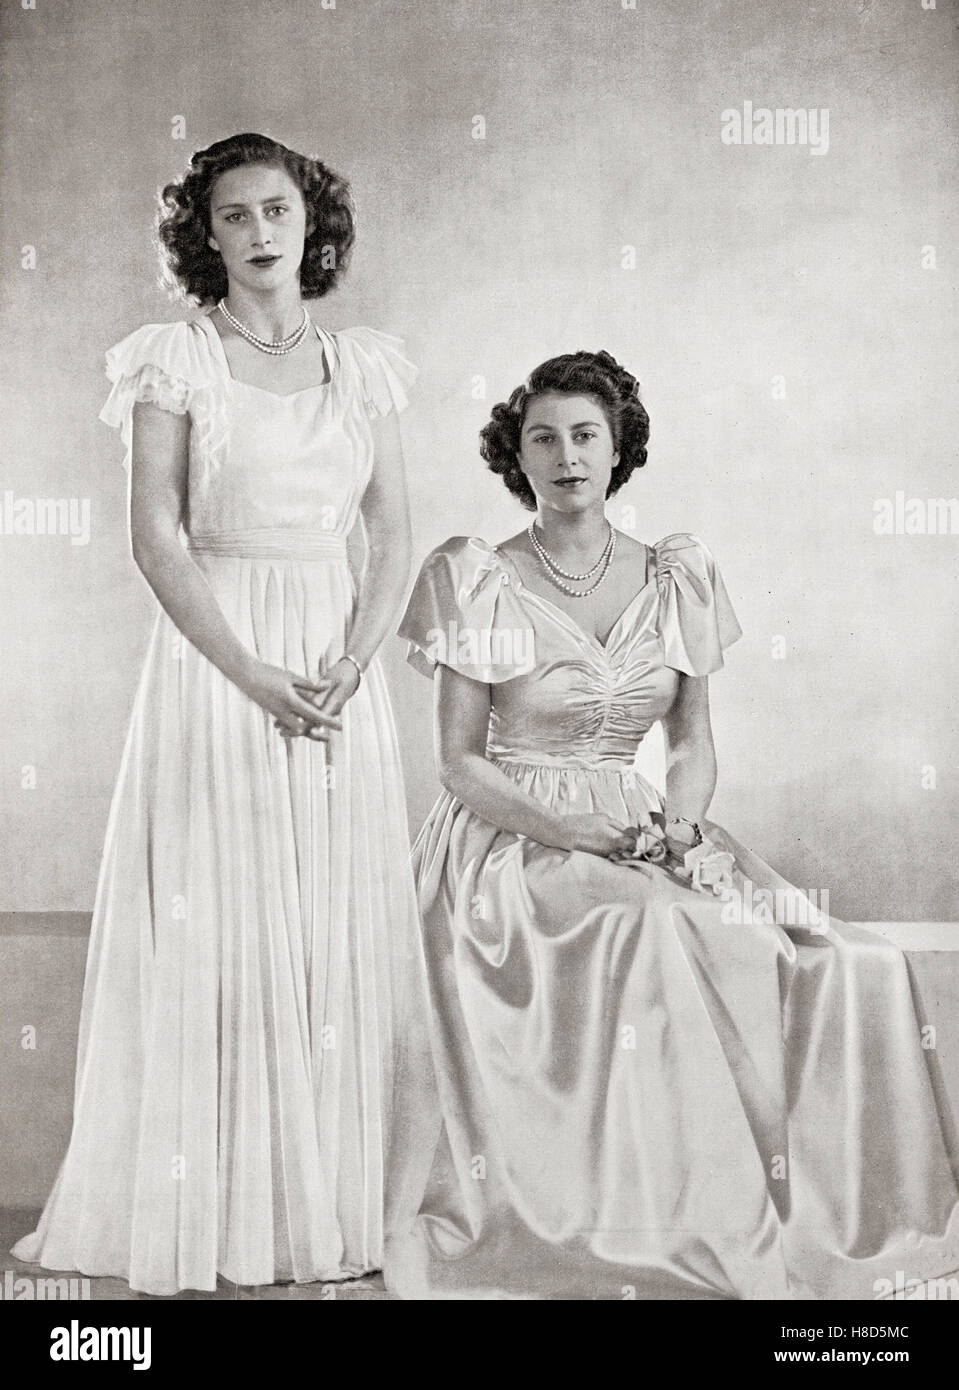 Princesse Margaret, à gauche, et princesse Elizabeth, future reine Elizabeth II, à droite, en 1946. Princesse Margaret, Margaret Rose, 1930 – 2002, appelée princesse Margaret Rose. Fille plus jeune du roi George VI et de la reine Elizabeth. Princesse Elizabeth, future Elizabeth II, 1926 - 2022. Reine du Royaume-Uni, du Canada, de l'Australie et de la Nouvelle-Zélande. Banque D'Images